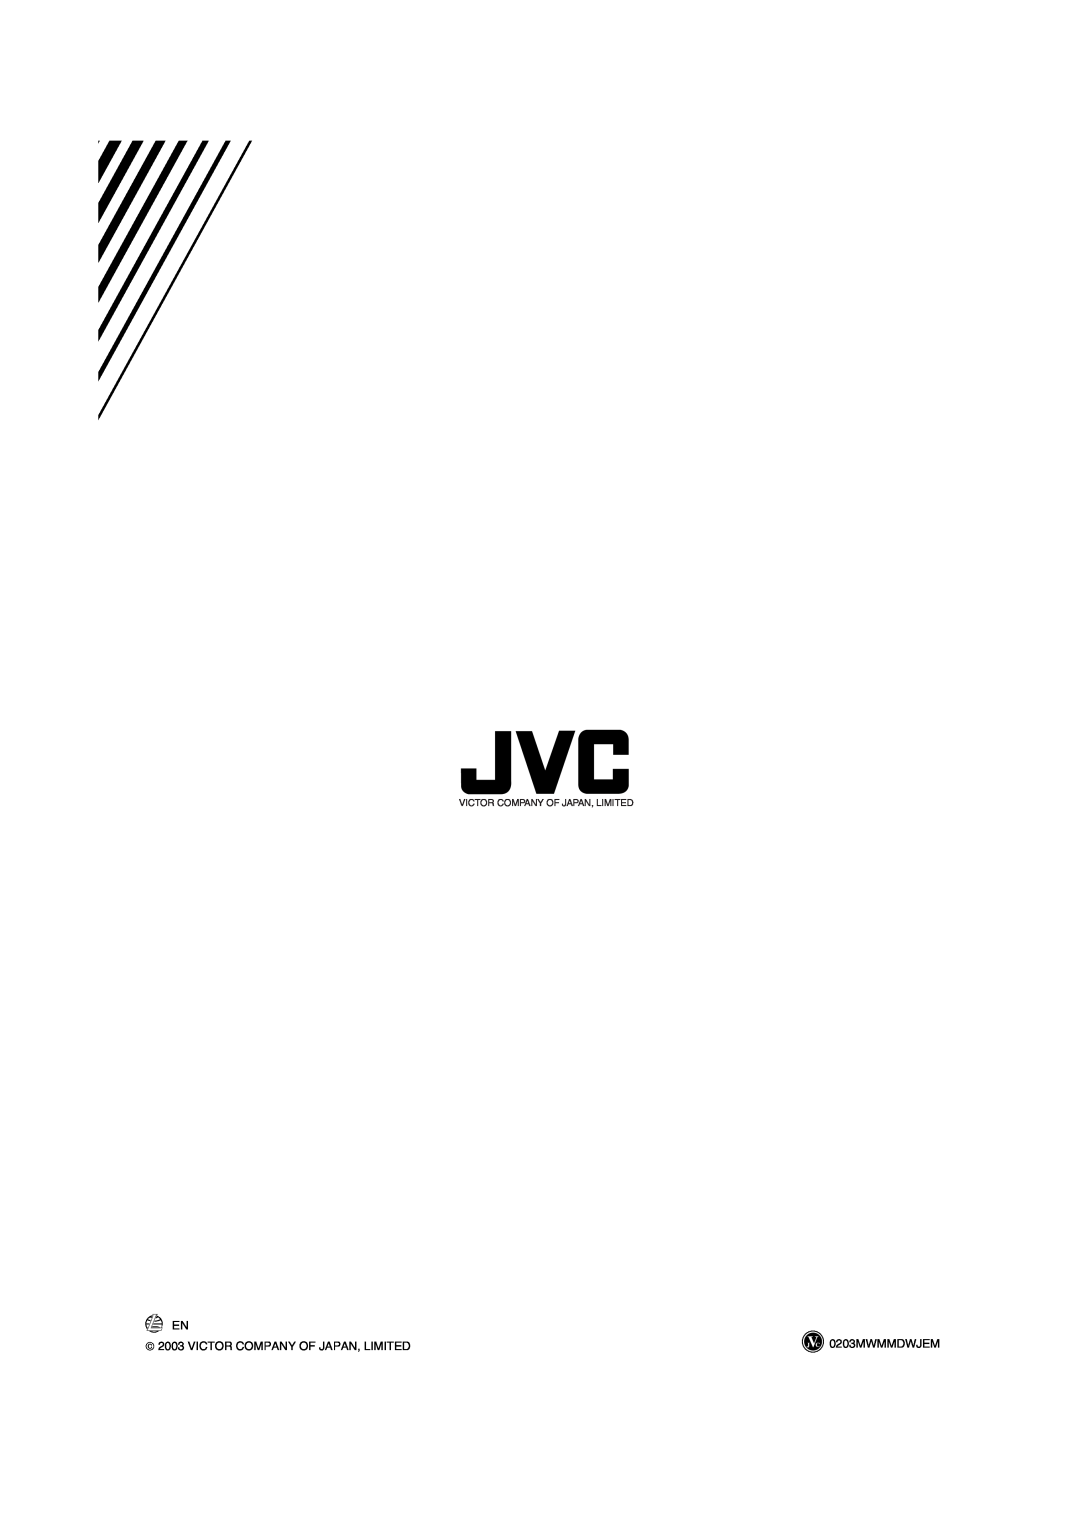 JVC HX-Z10 manual  2003 VICTOR COMPANY OF JAPAN, LIMITED, 0203MWMMDWJEM, Victor Company Of Japan, Limited 